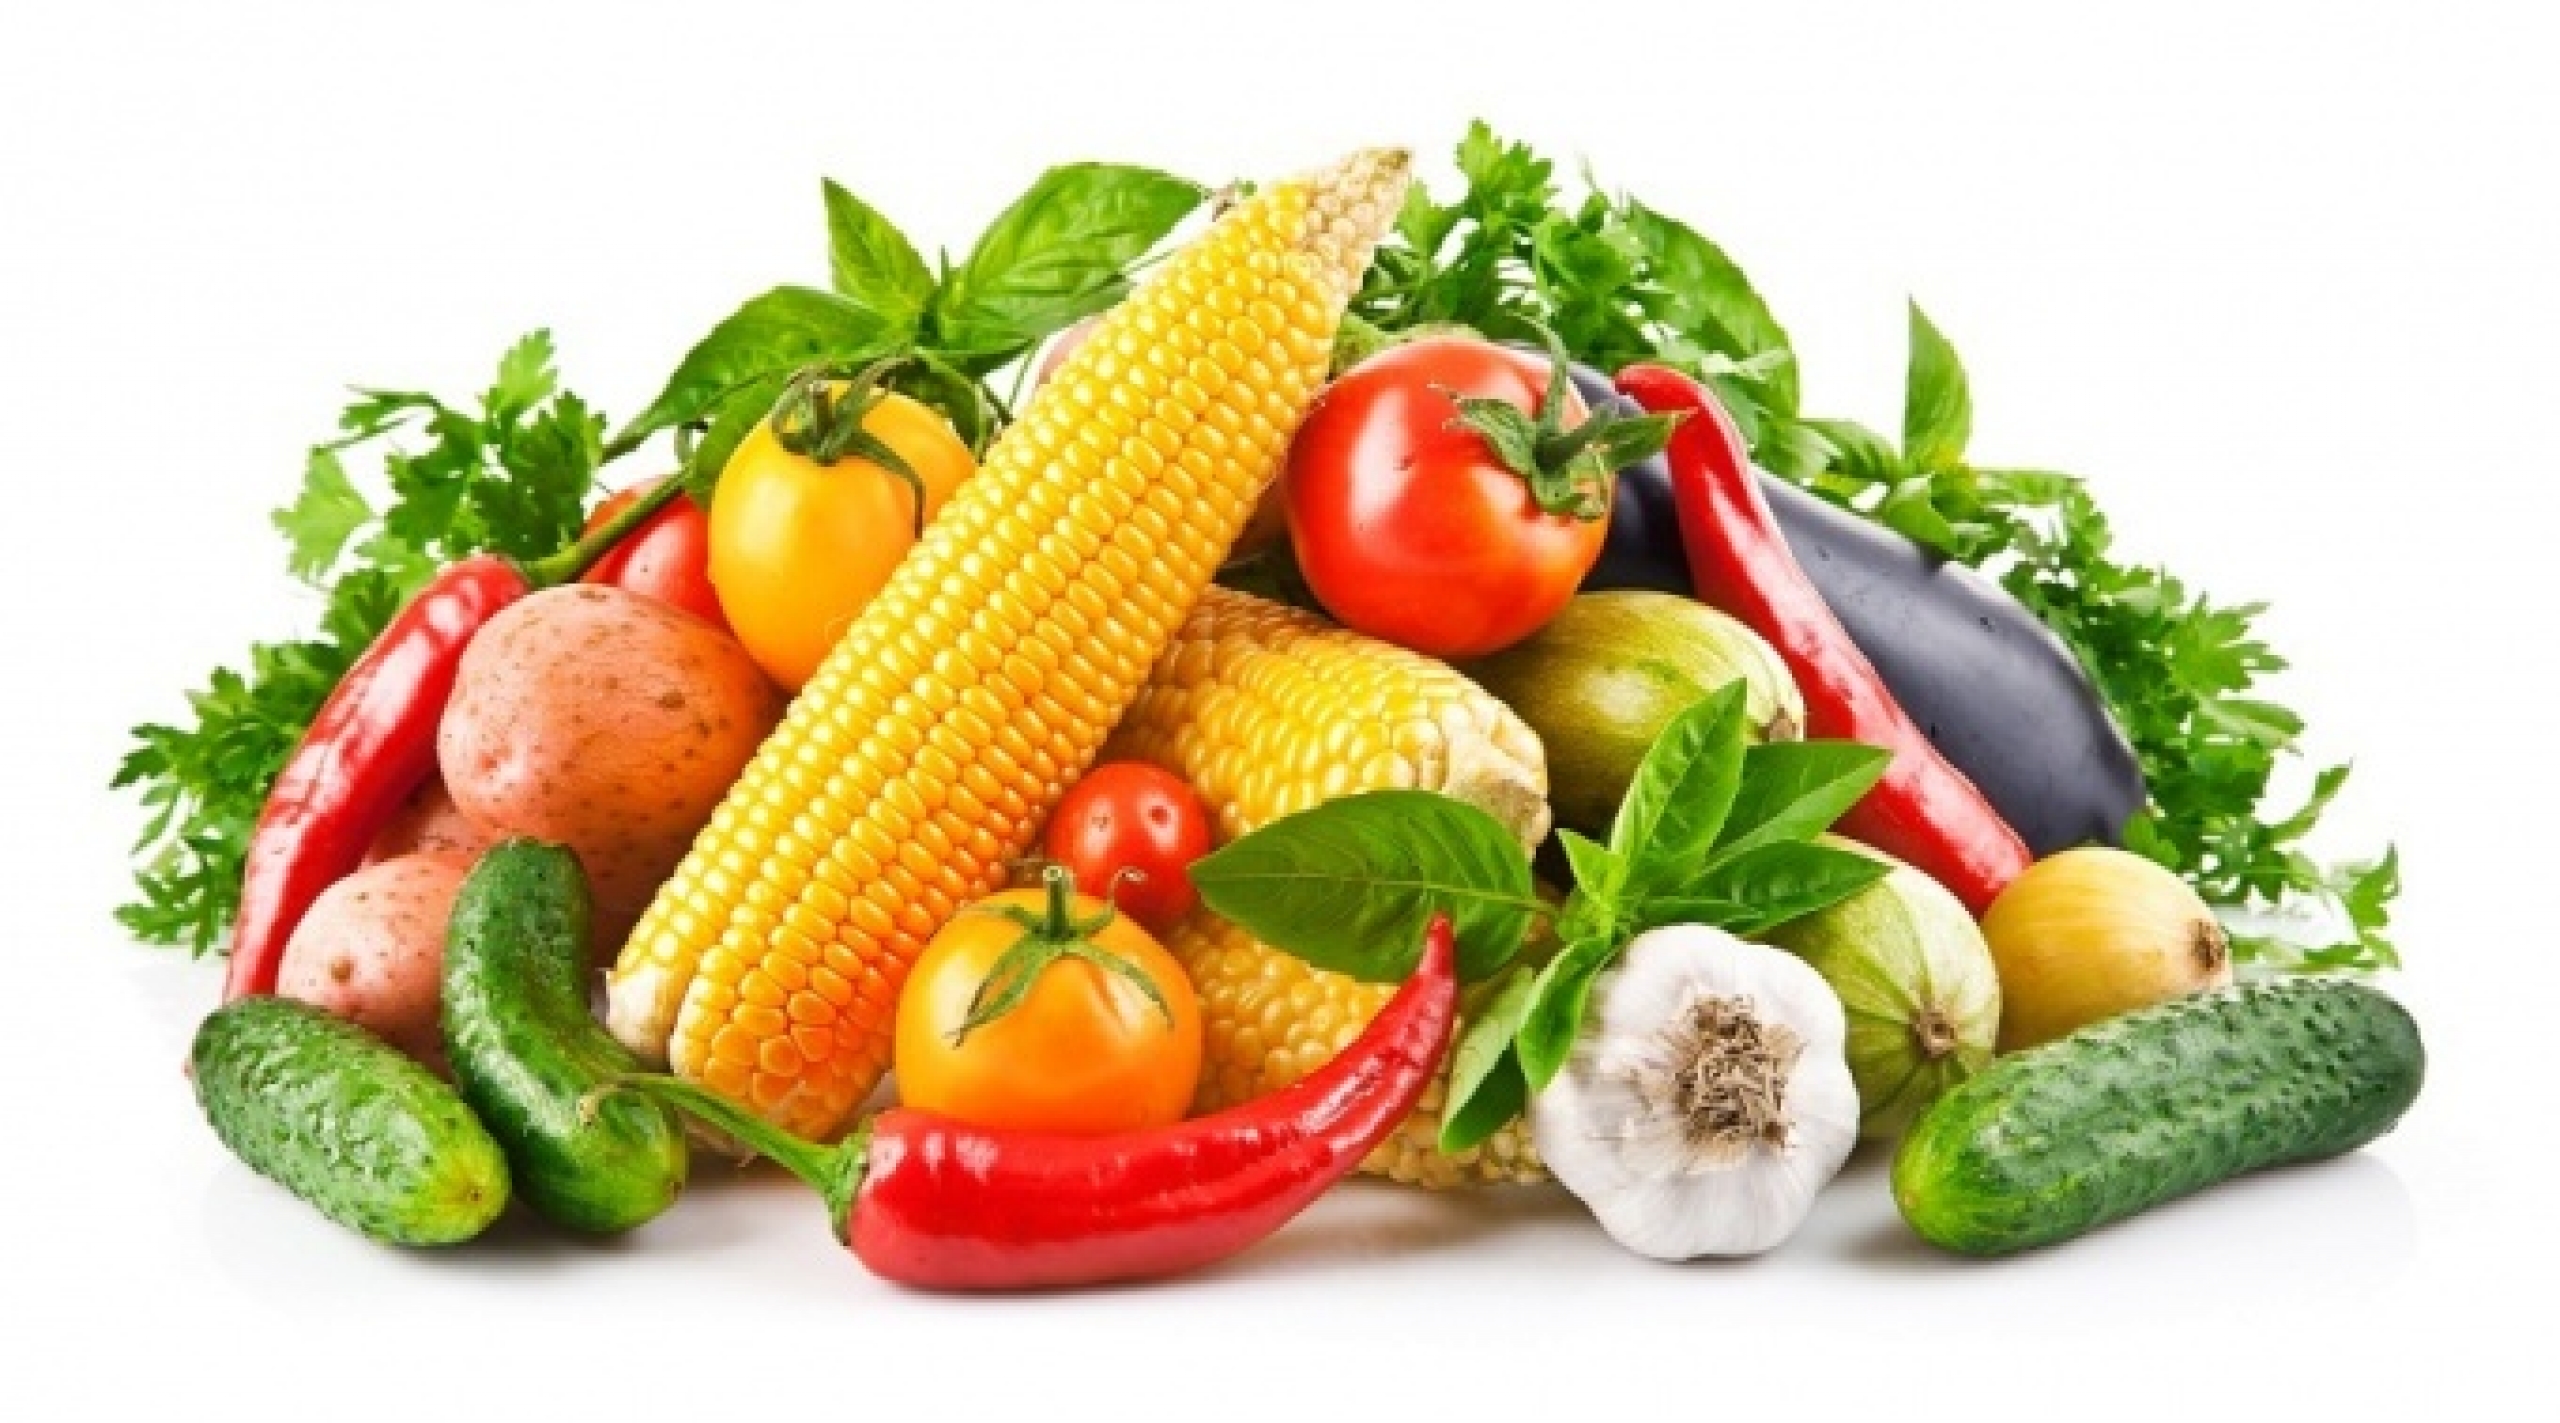 Польза вегетарианства – протеины без мяса